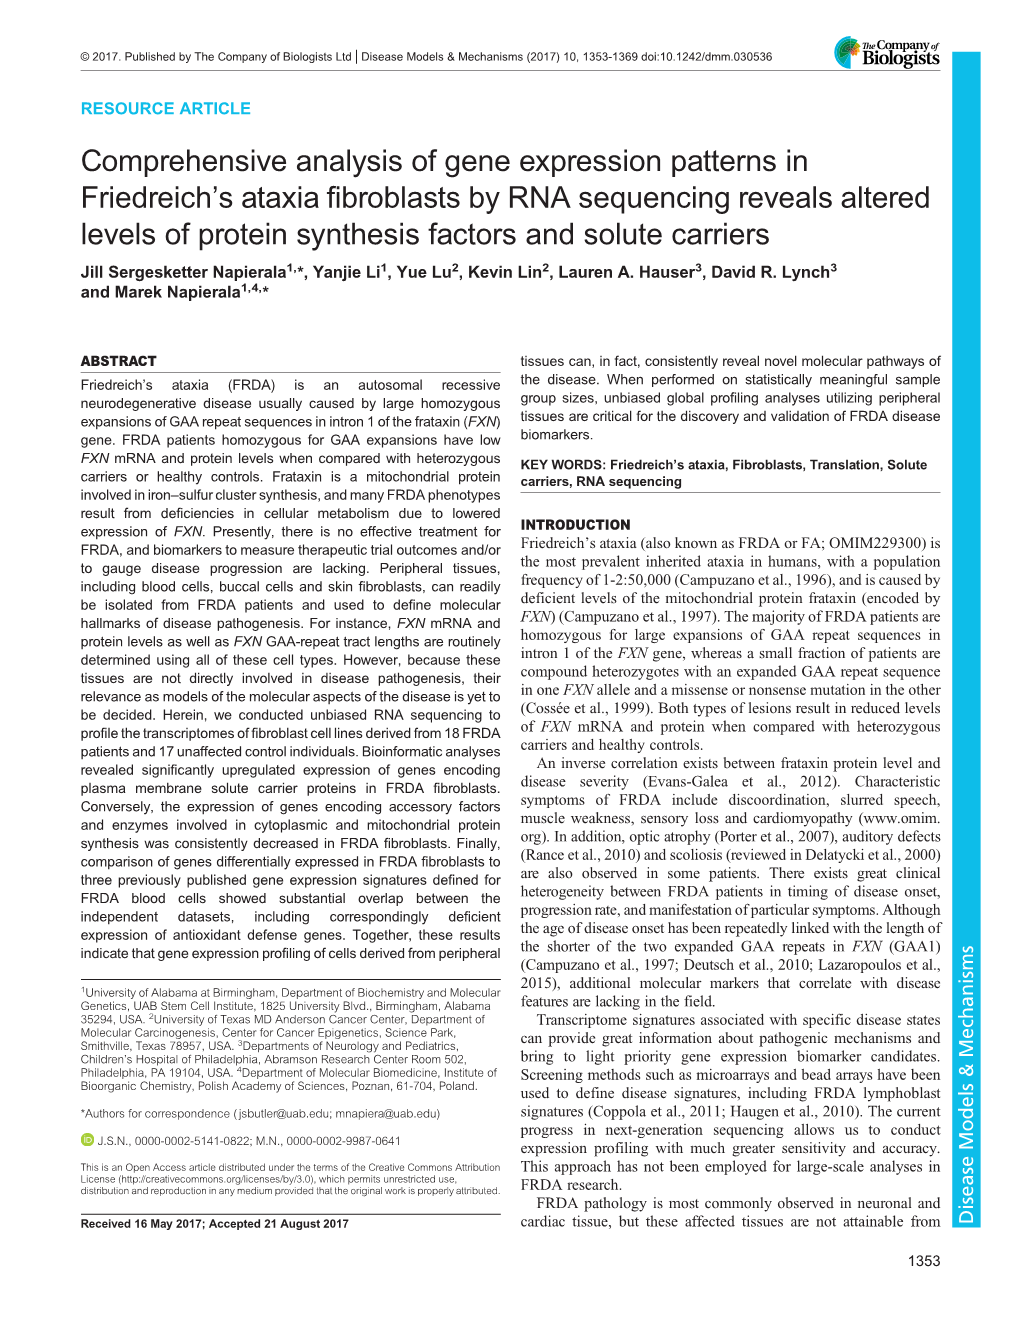 Comprehensive Analysis of Gene Expression Patterns in Friedreich's